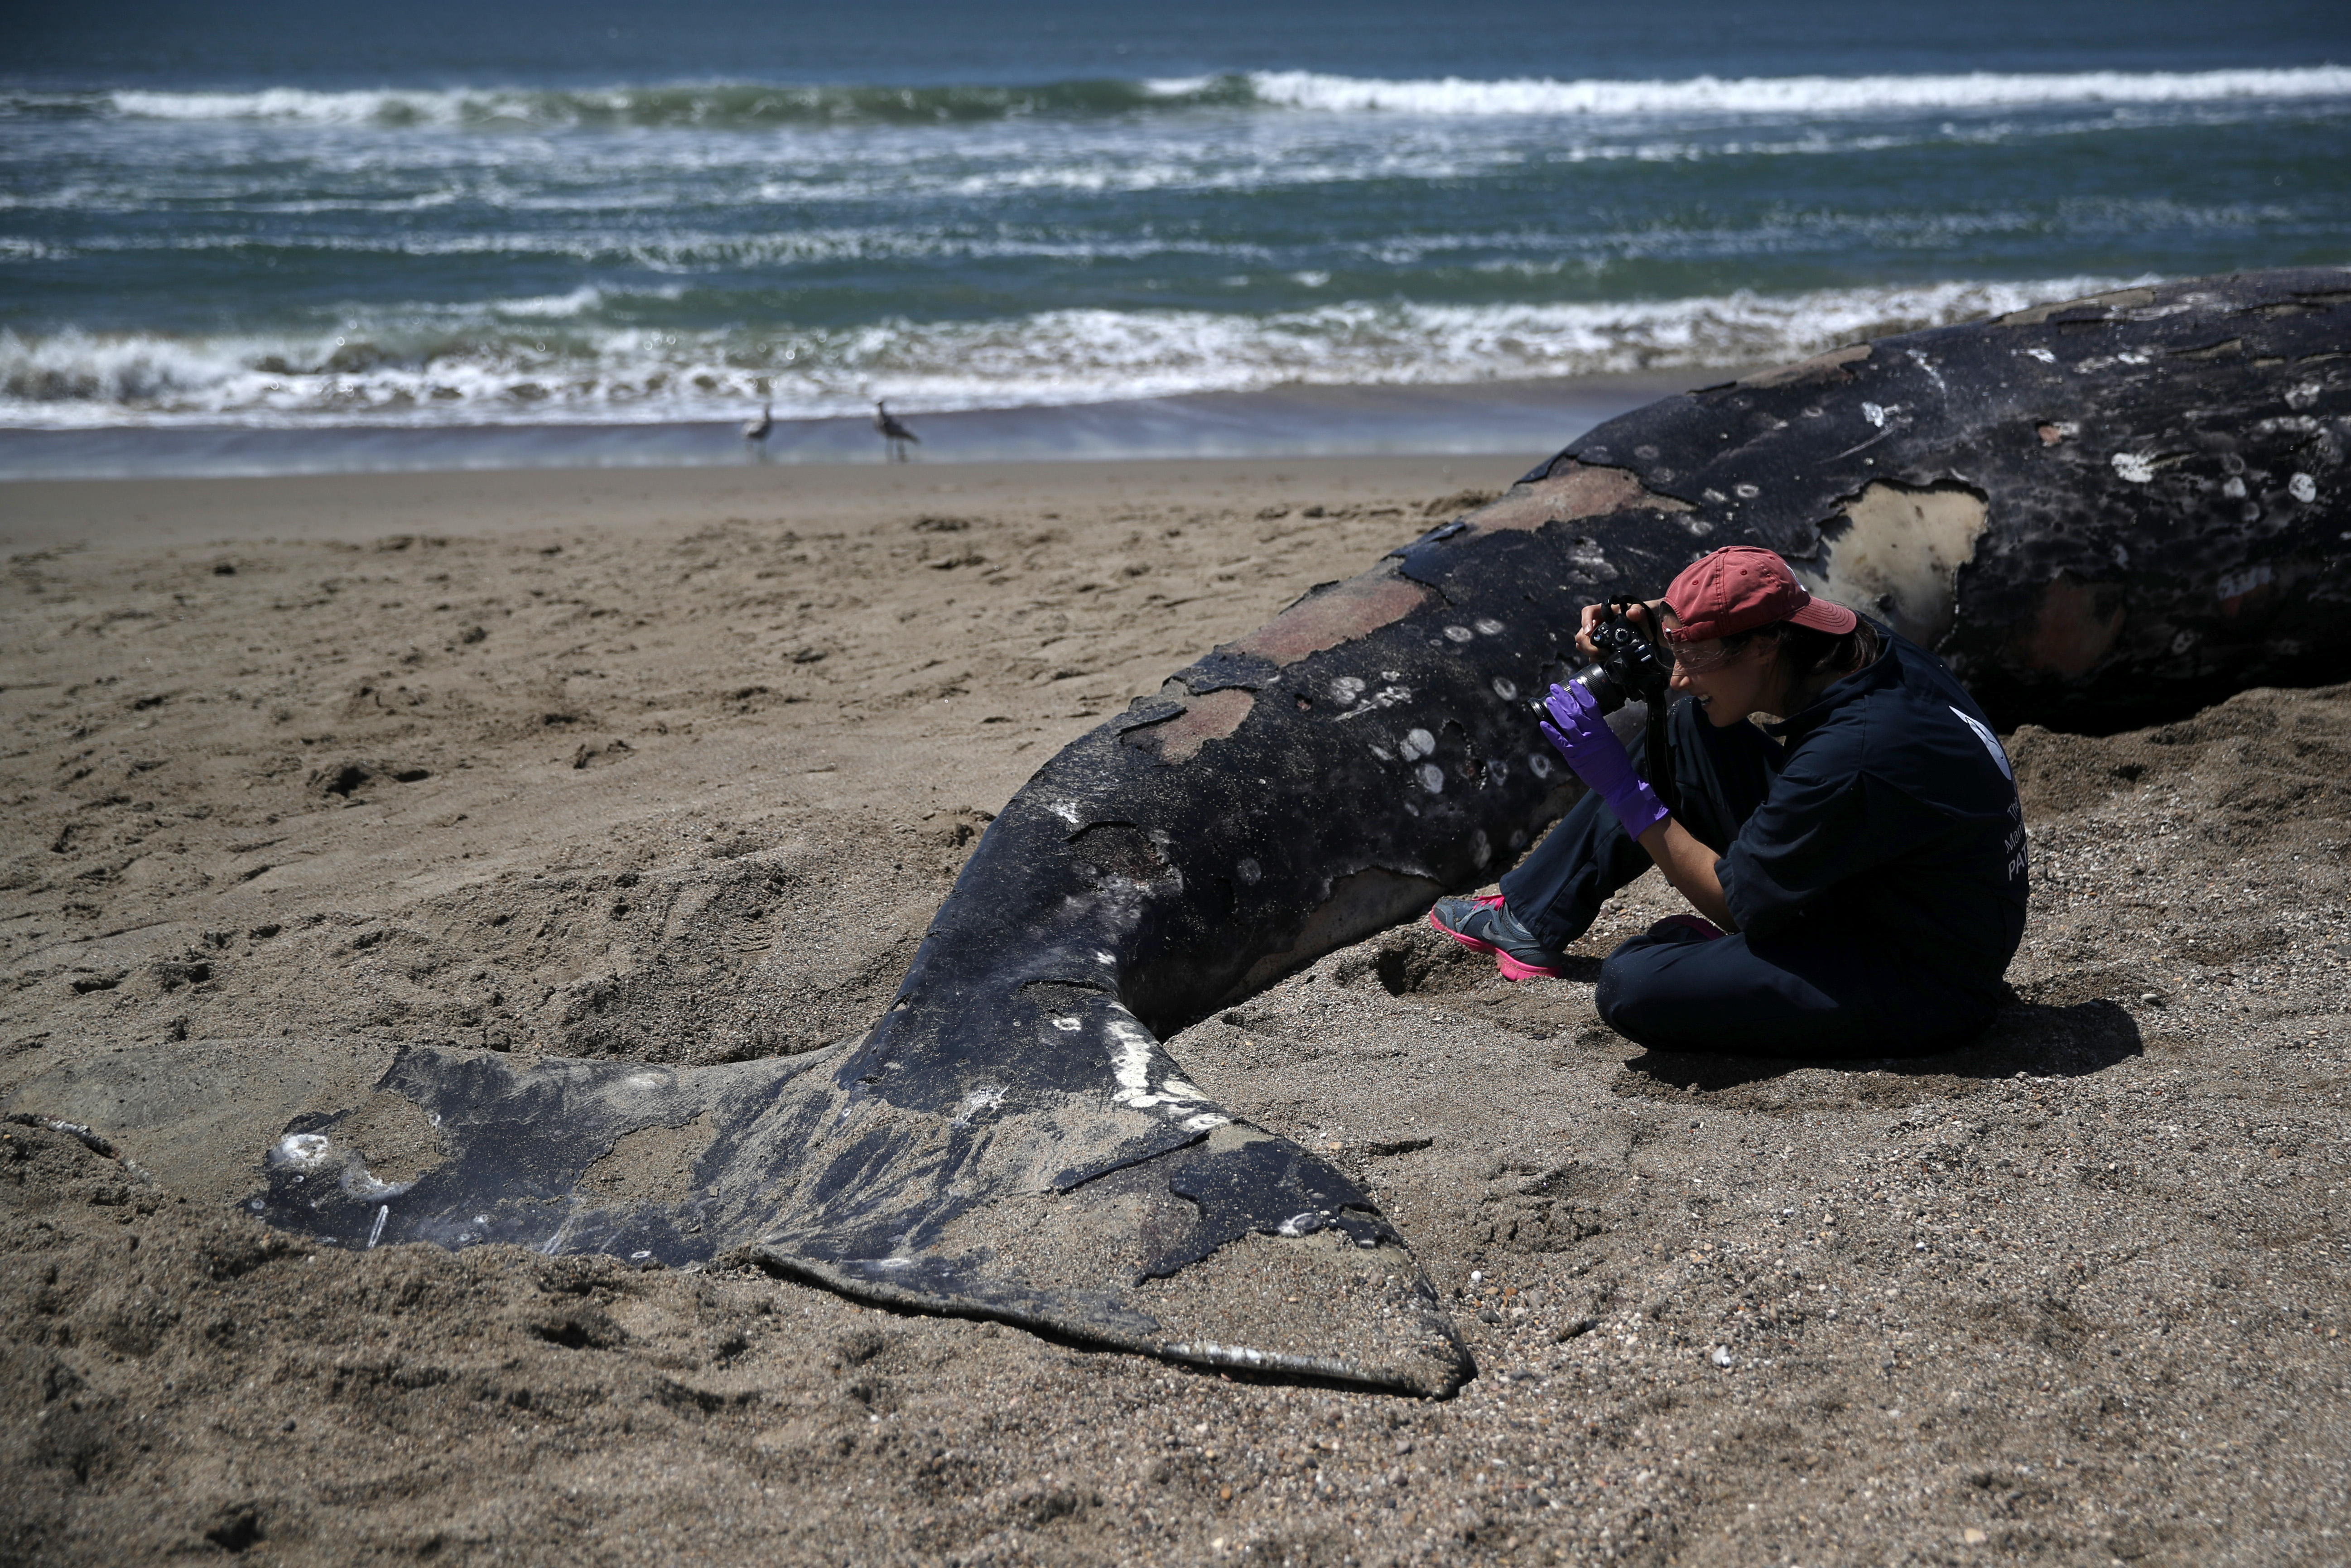 Annyira sok szürke bálna tetemét mosta partra a víz Washingtonban, hogy a hatóságok nem tudnak mit kezdeni a helyzettel